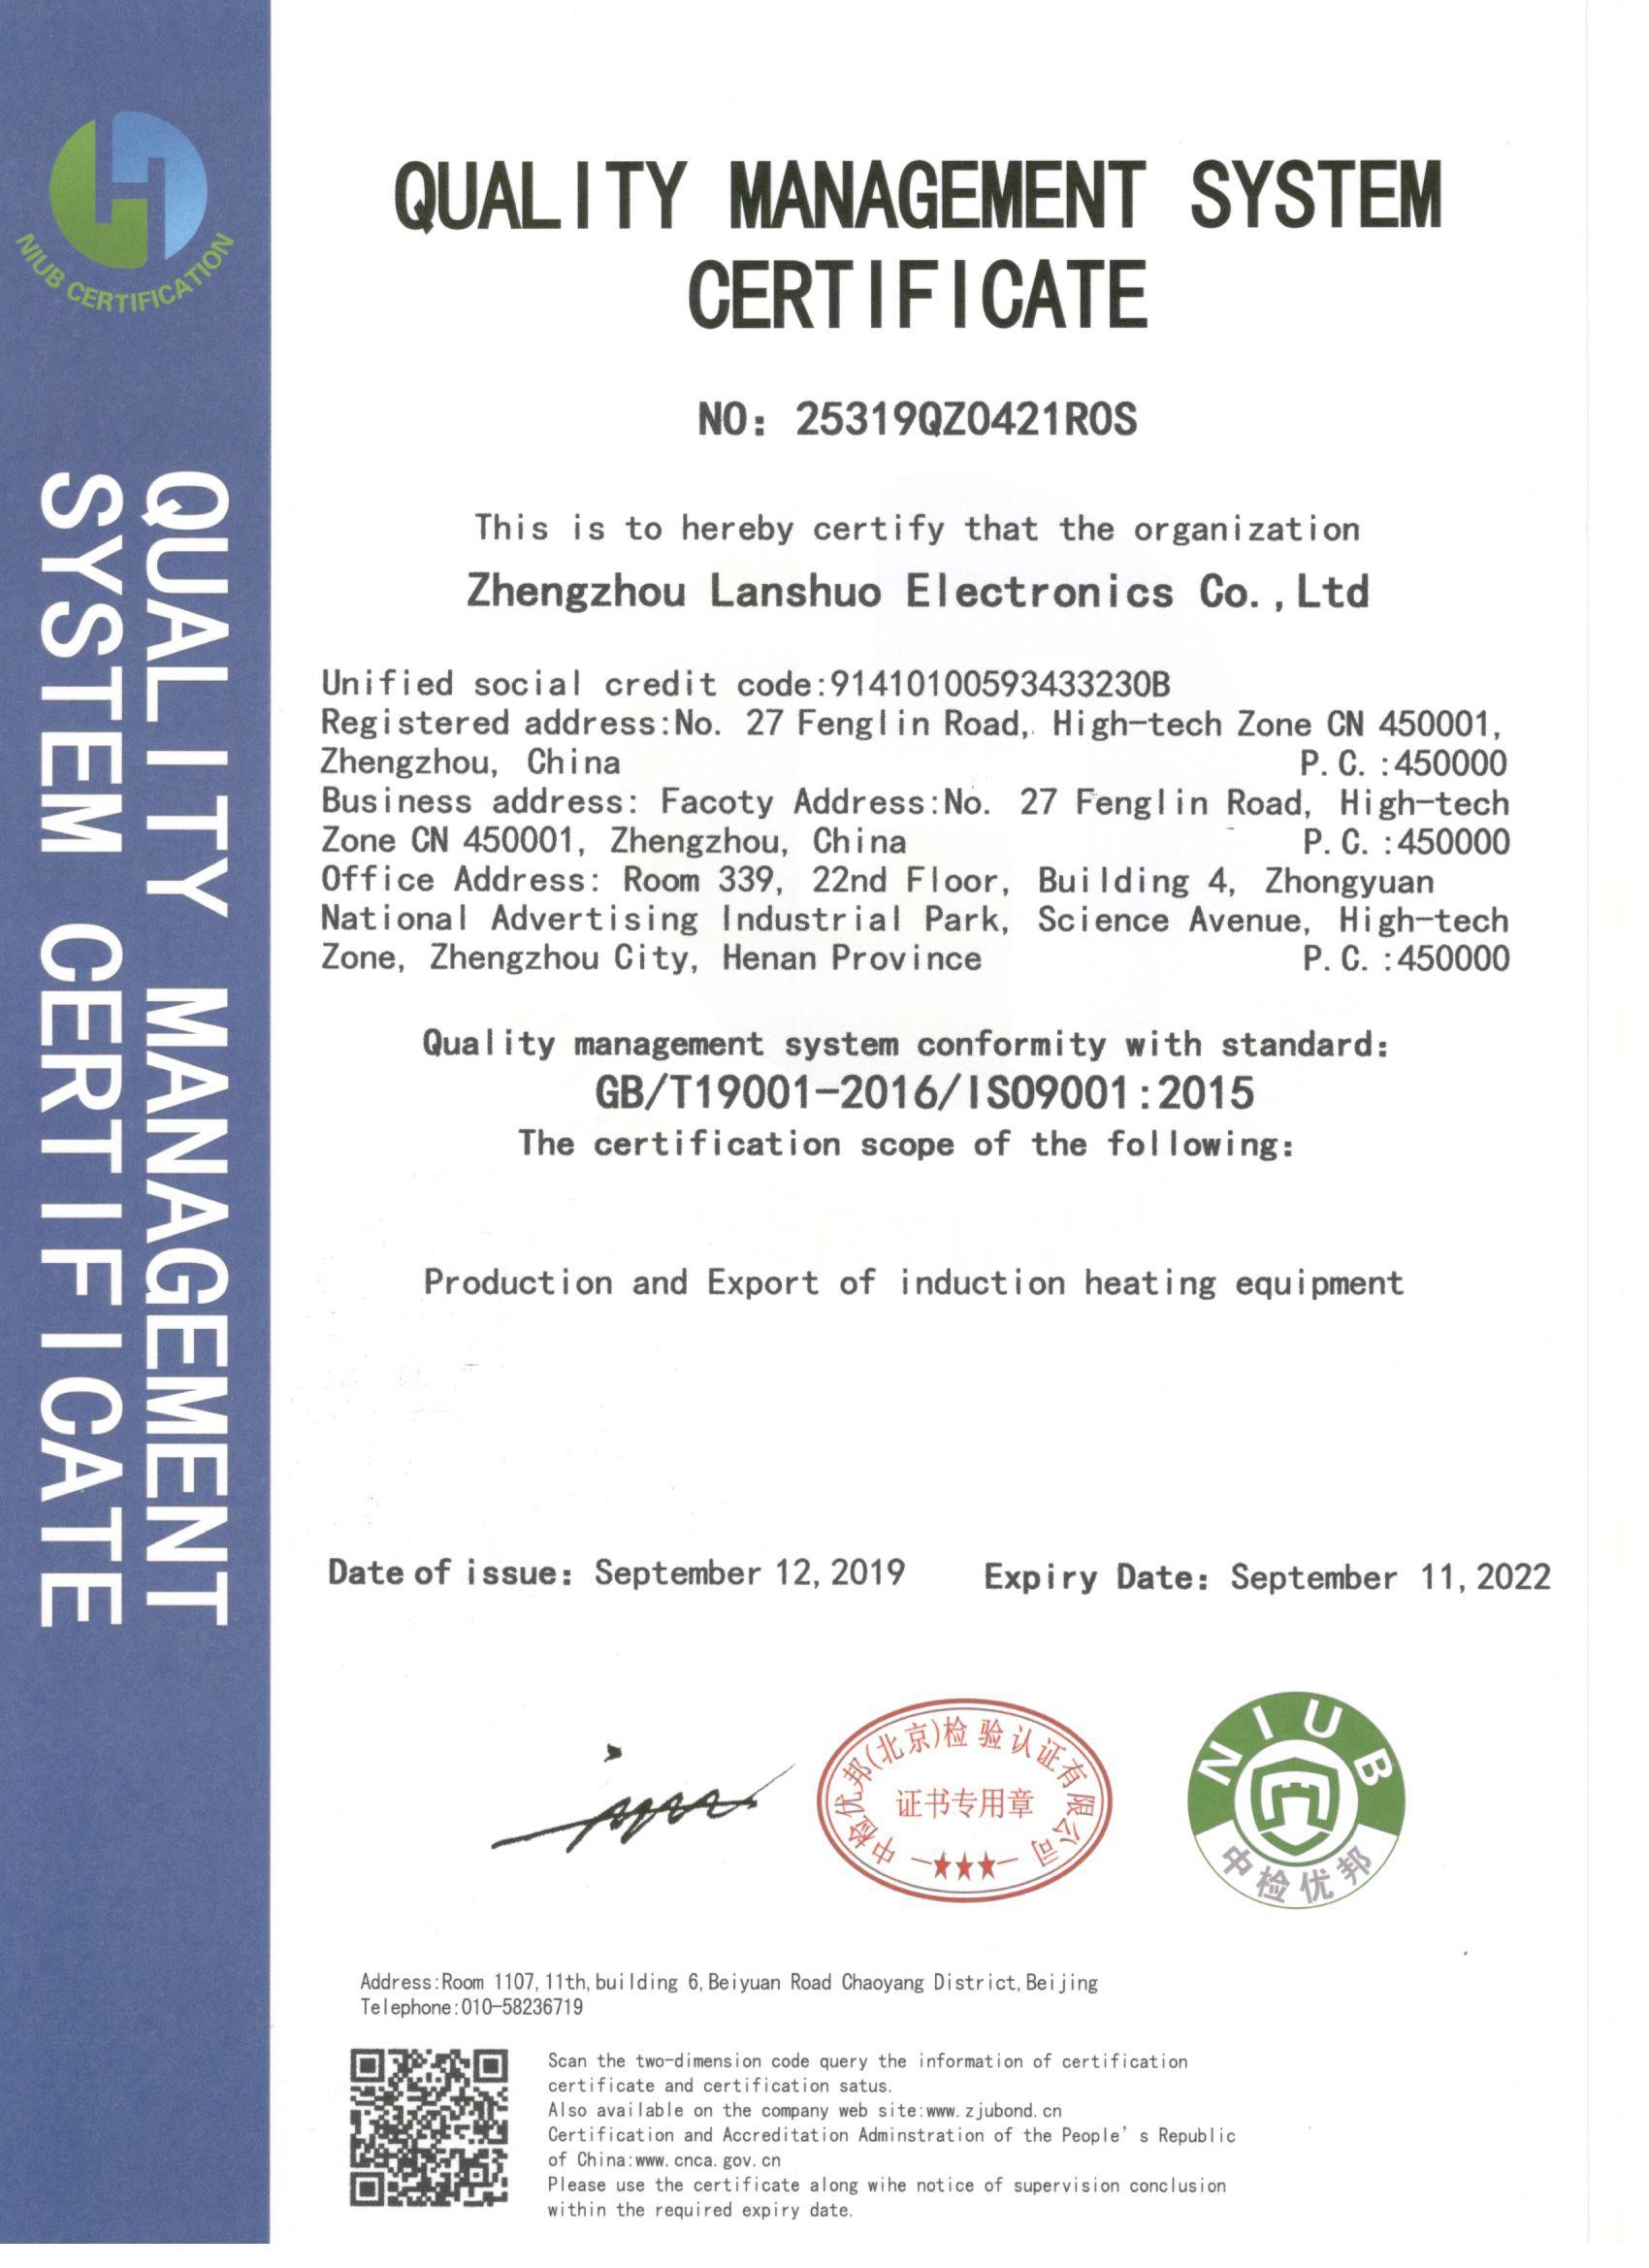 Zhengzhou Lanshuo Electronics Co., Ltd Certifications